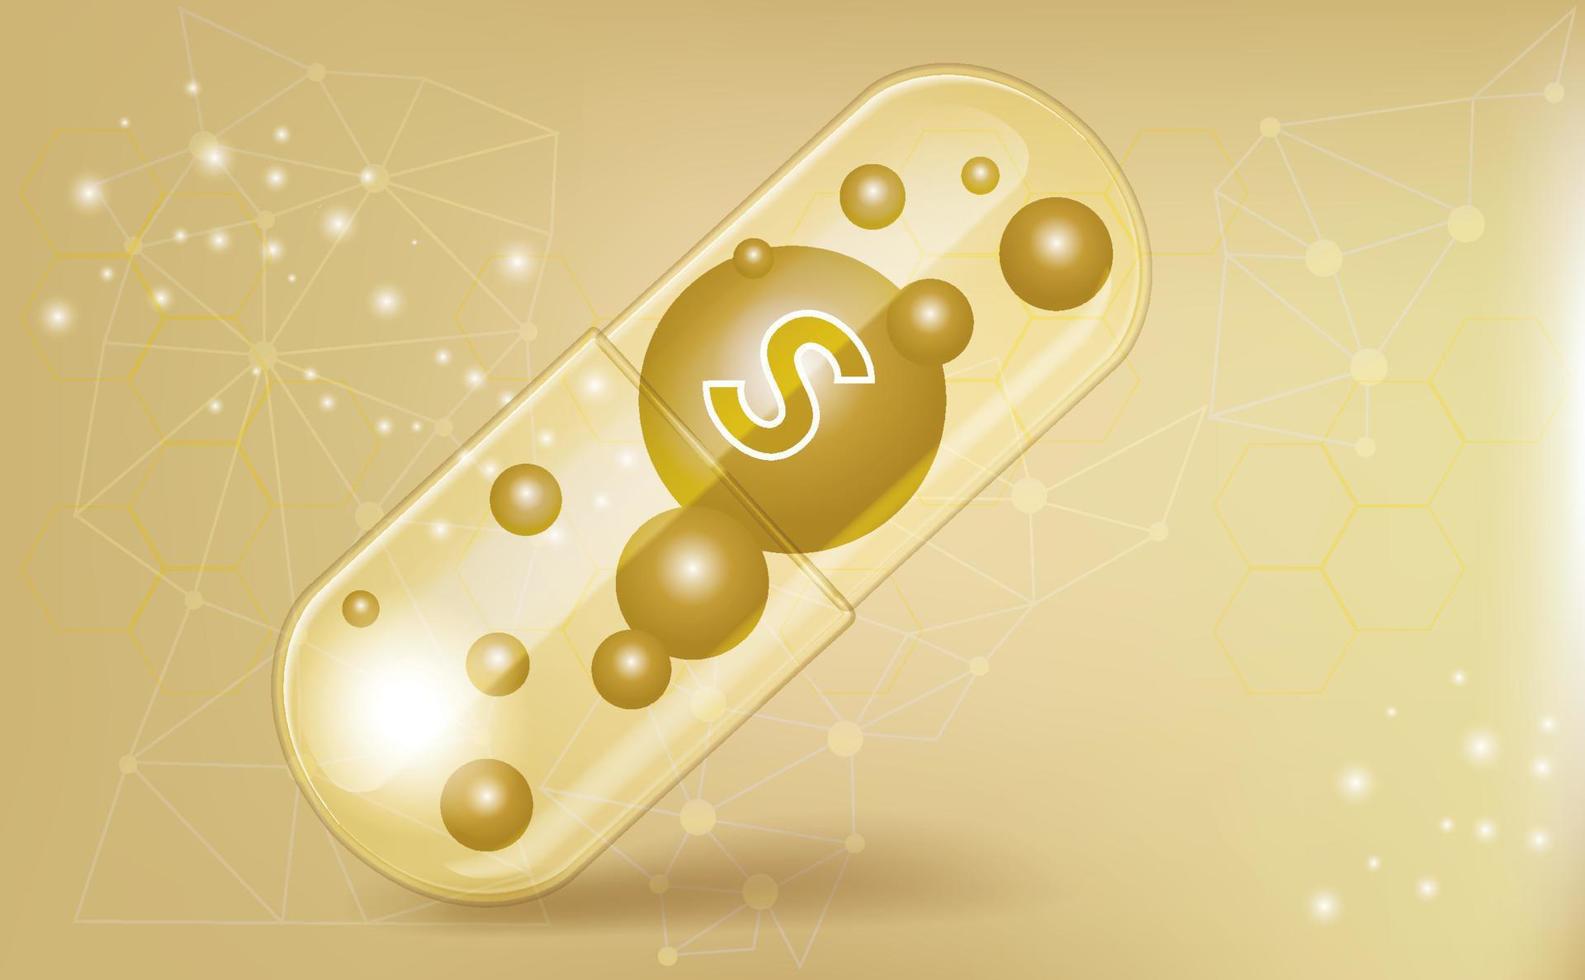 capsule médicale de soufre, macronutriment, vitamine, supplément sur fond marron, affiche d'information médicale. illustration vectorielle vecteur